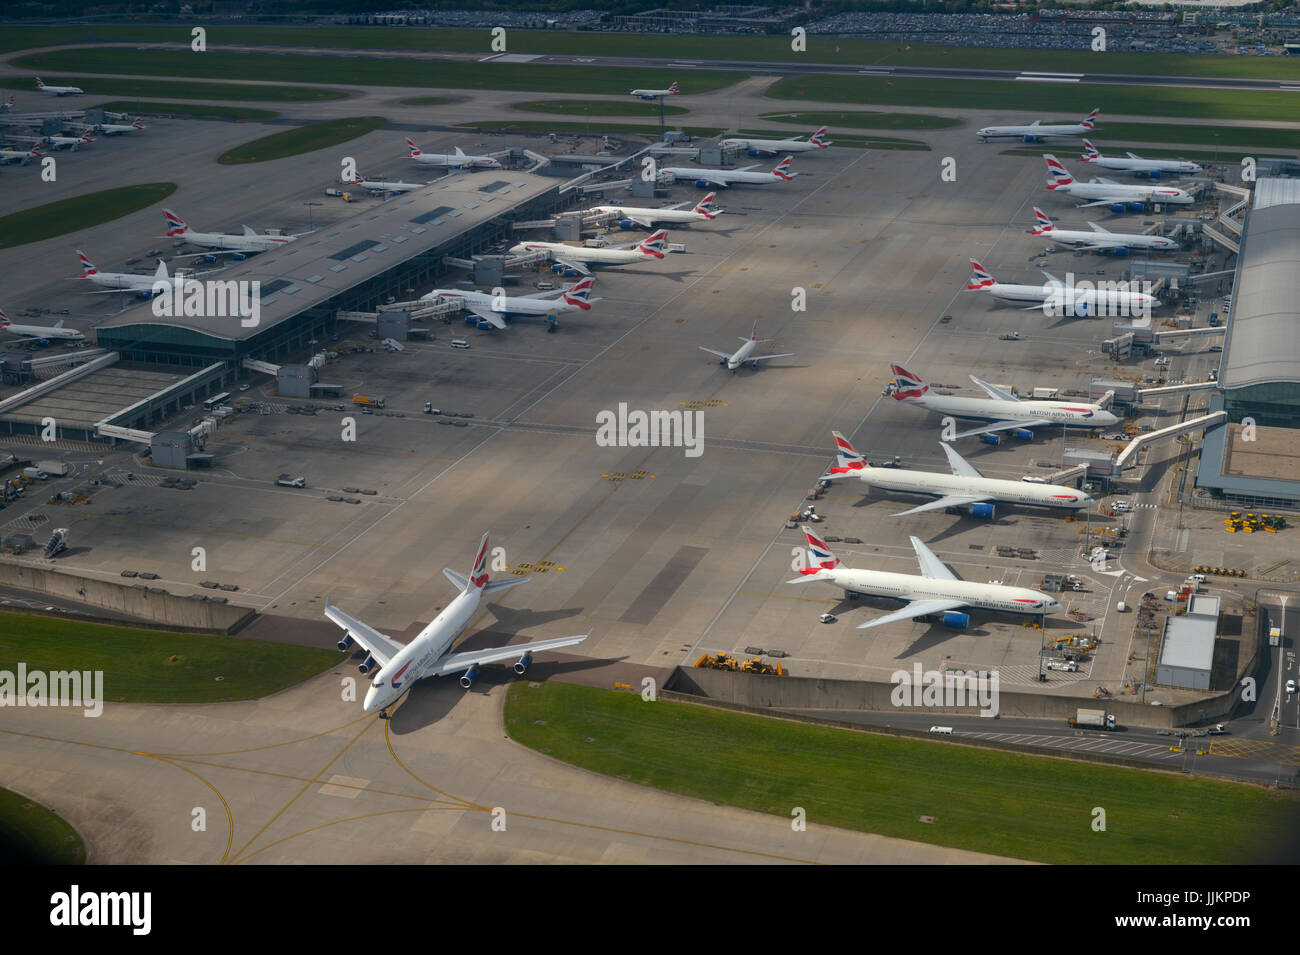 Un train de roulement Jumbo Jet (Boeing 747) pour le départ au terminal 5 (aérien) de l'aéroport d'Heathrow, Londres, Royaume-Uni Banque D'Images